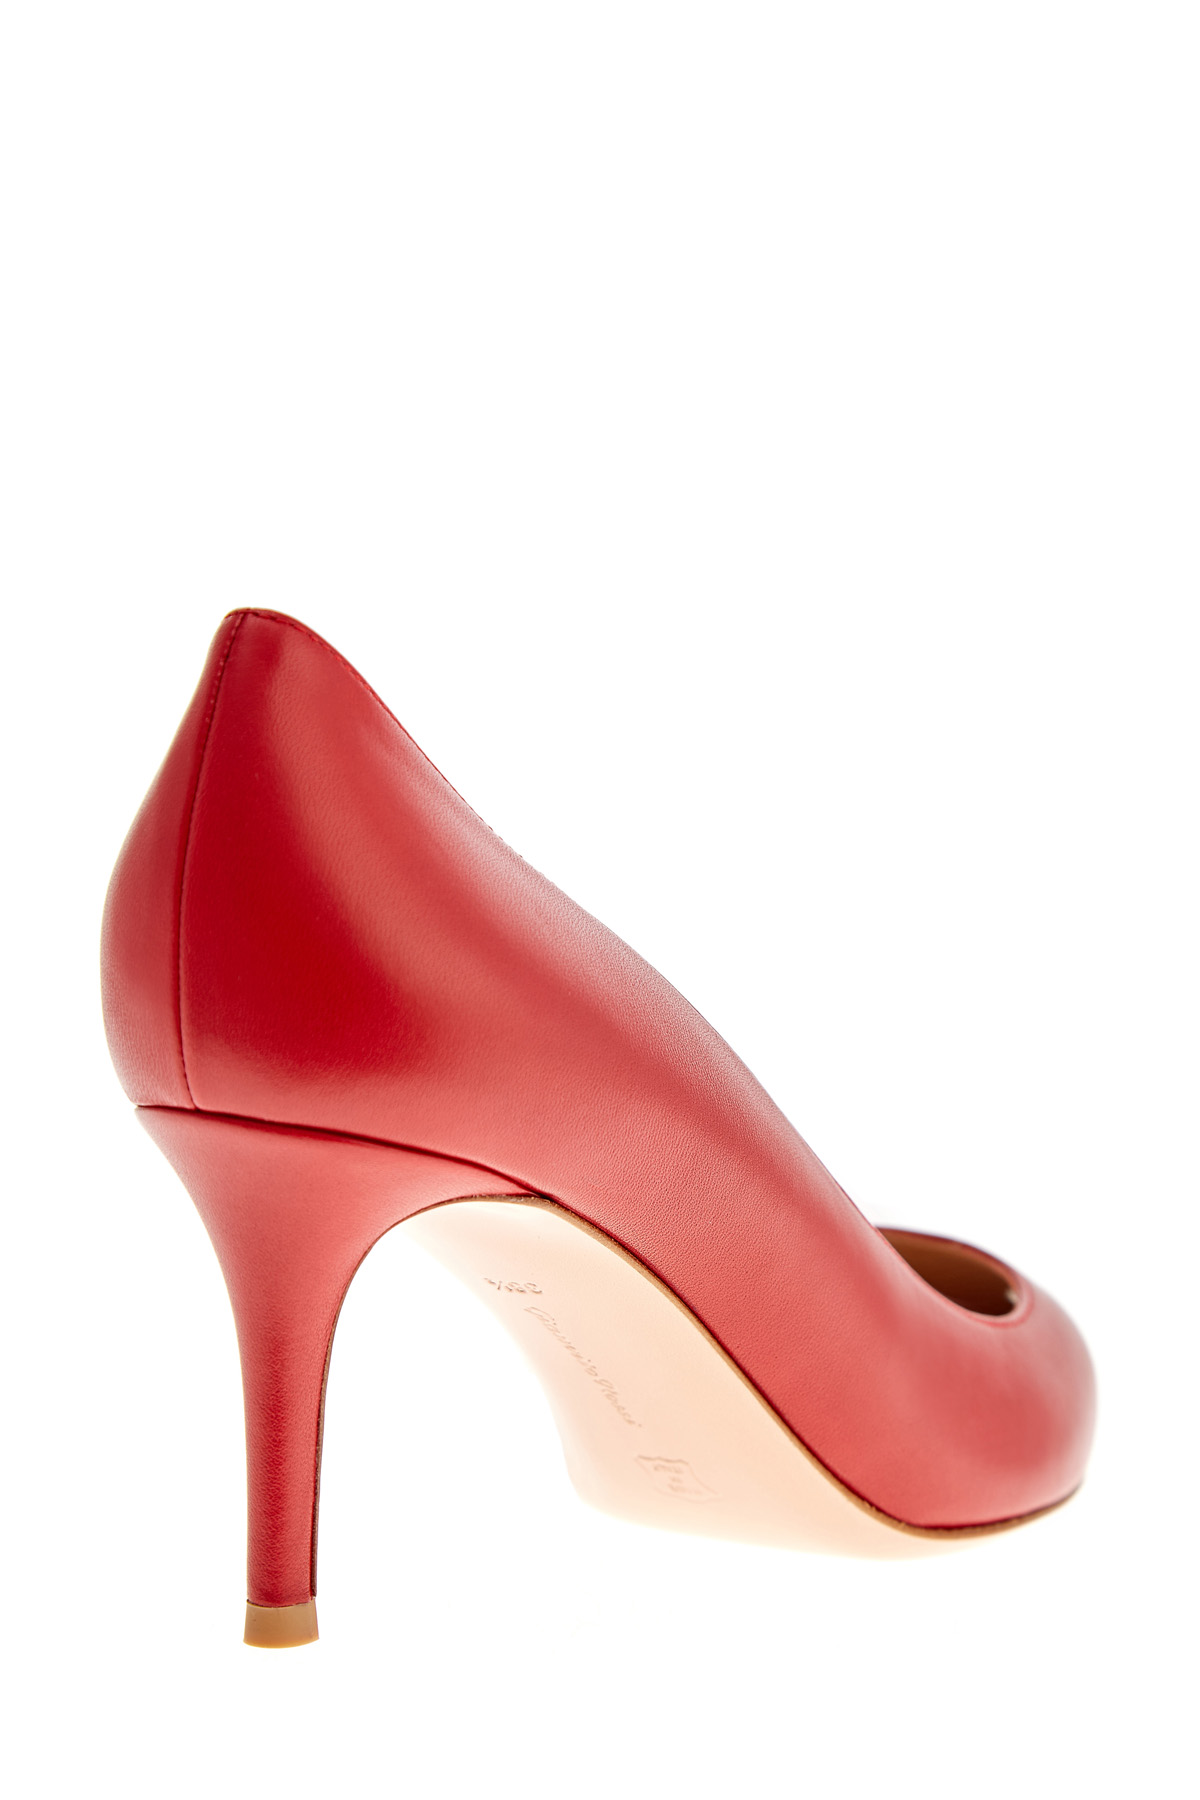 Алые туфли-лодочки из телячьей кожи GIANVITO ROSSI, цвет красный, размер 37.5 - фото 4